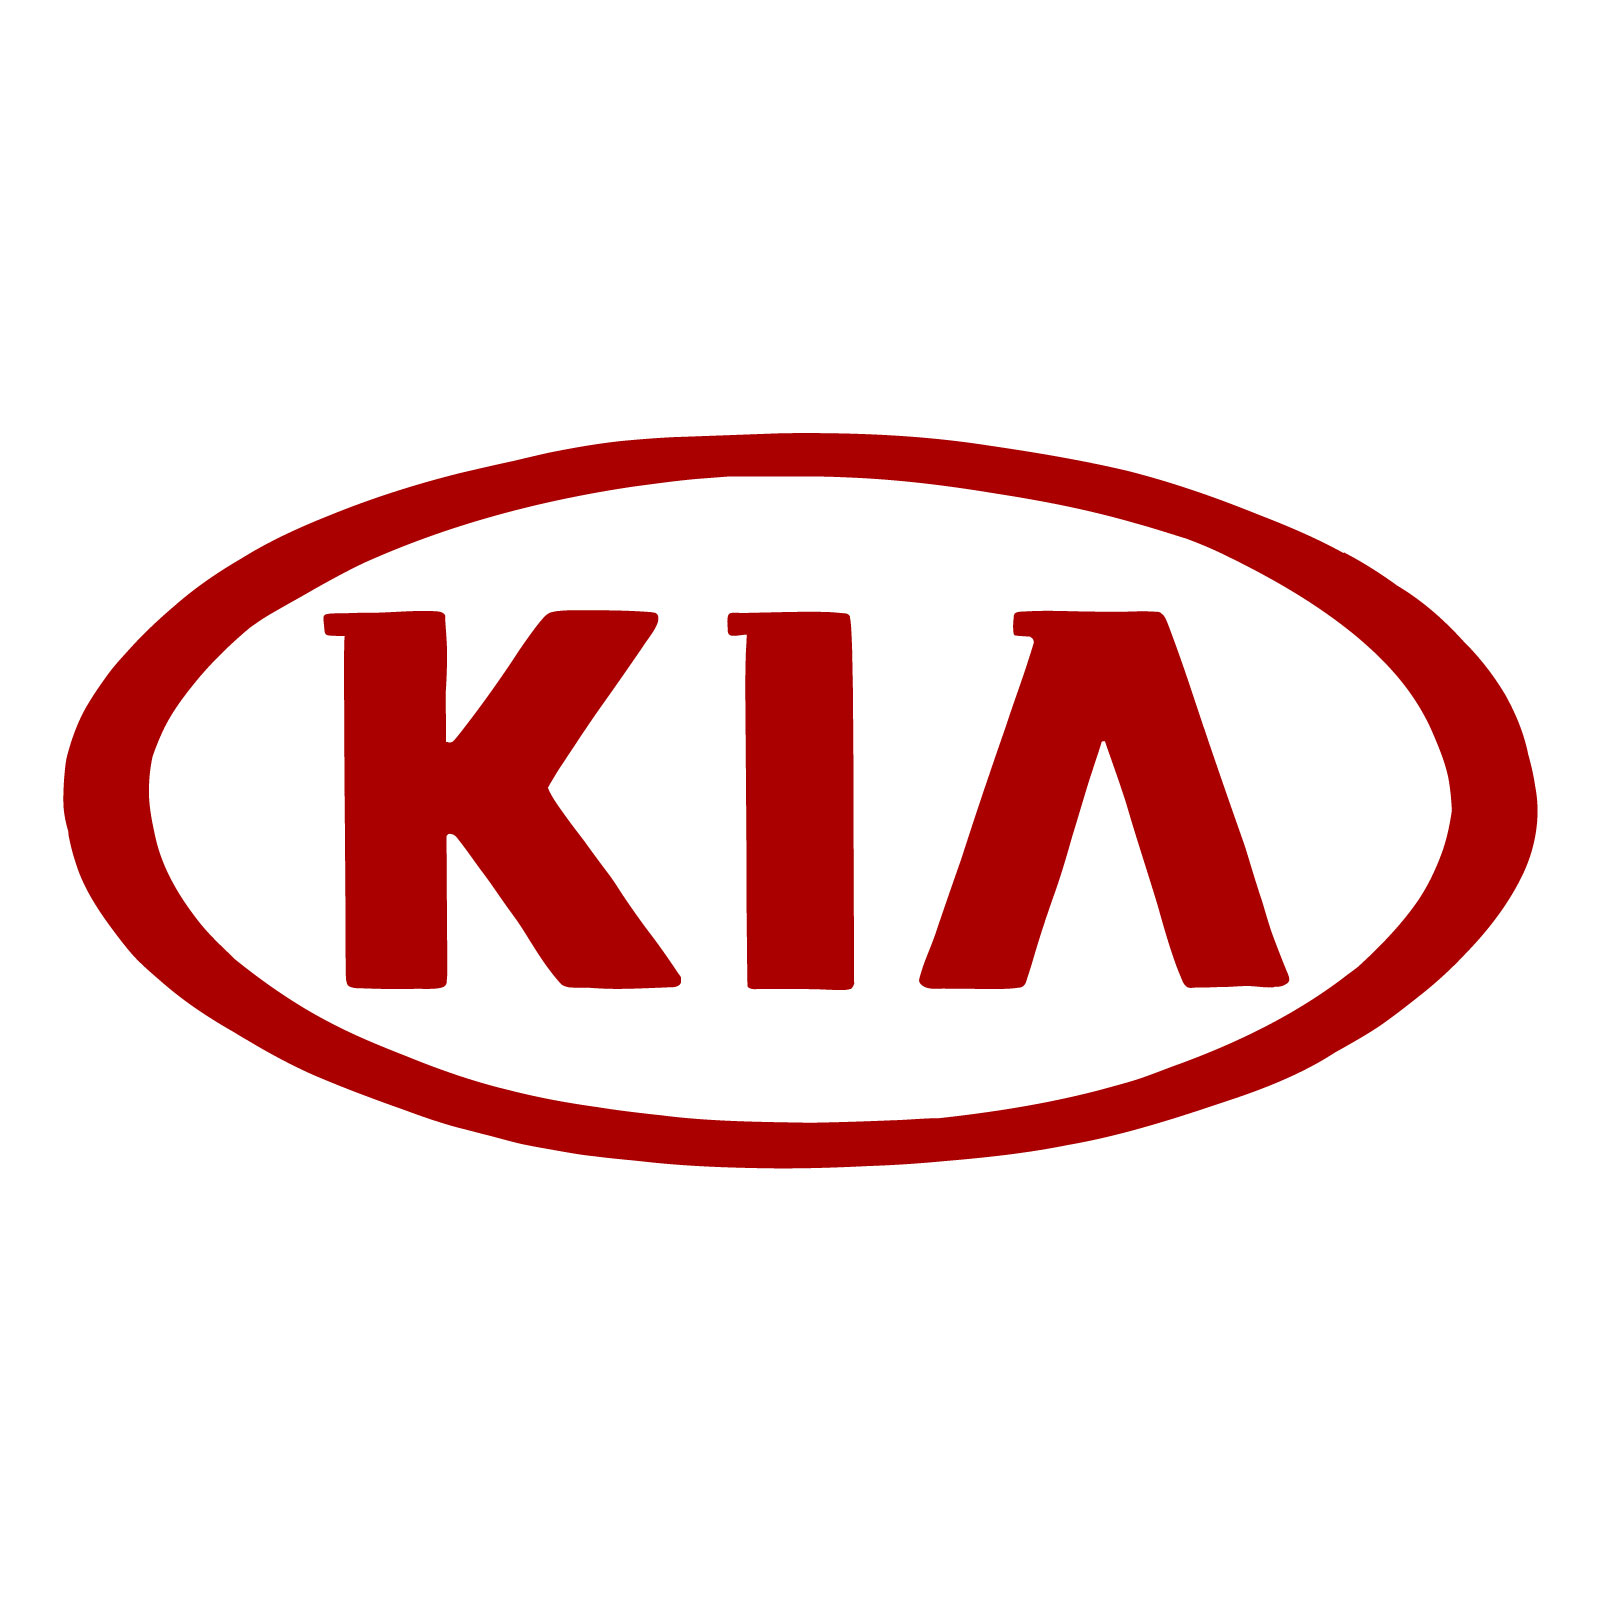 How to draw the KIA logo - final step